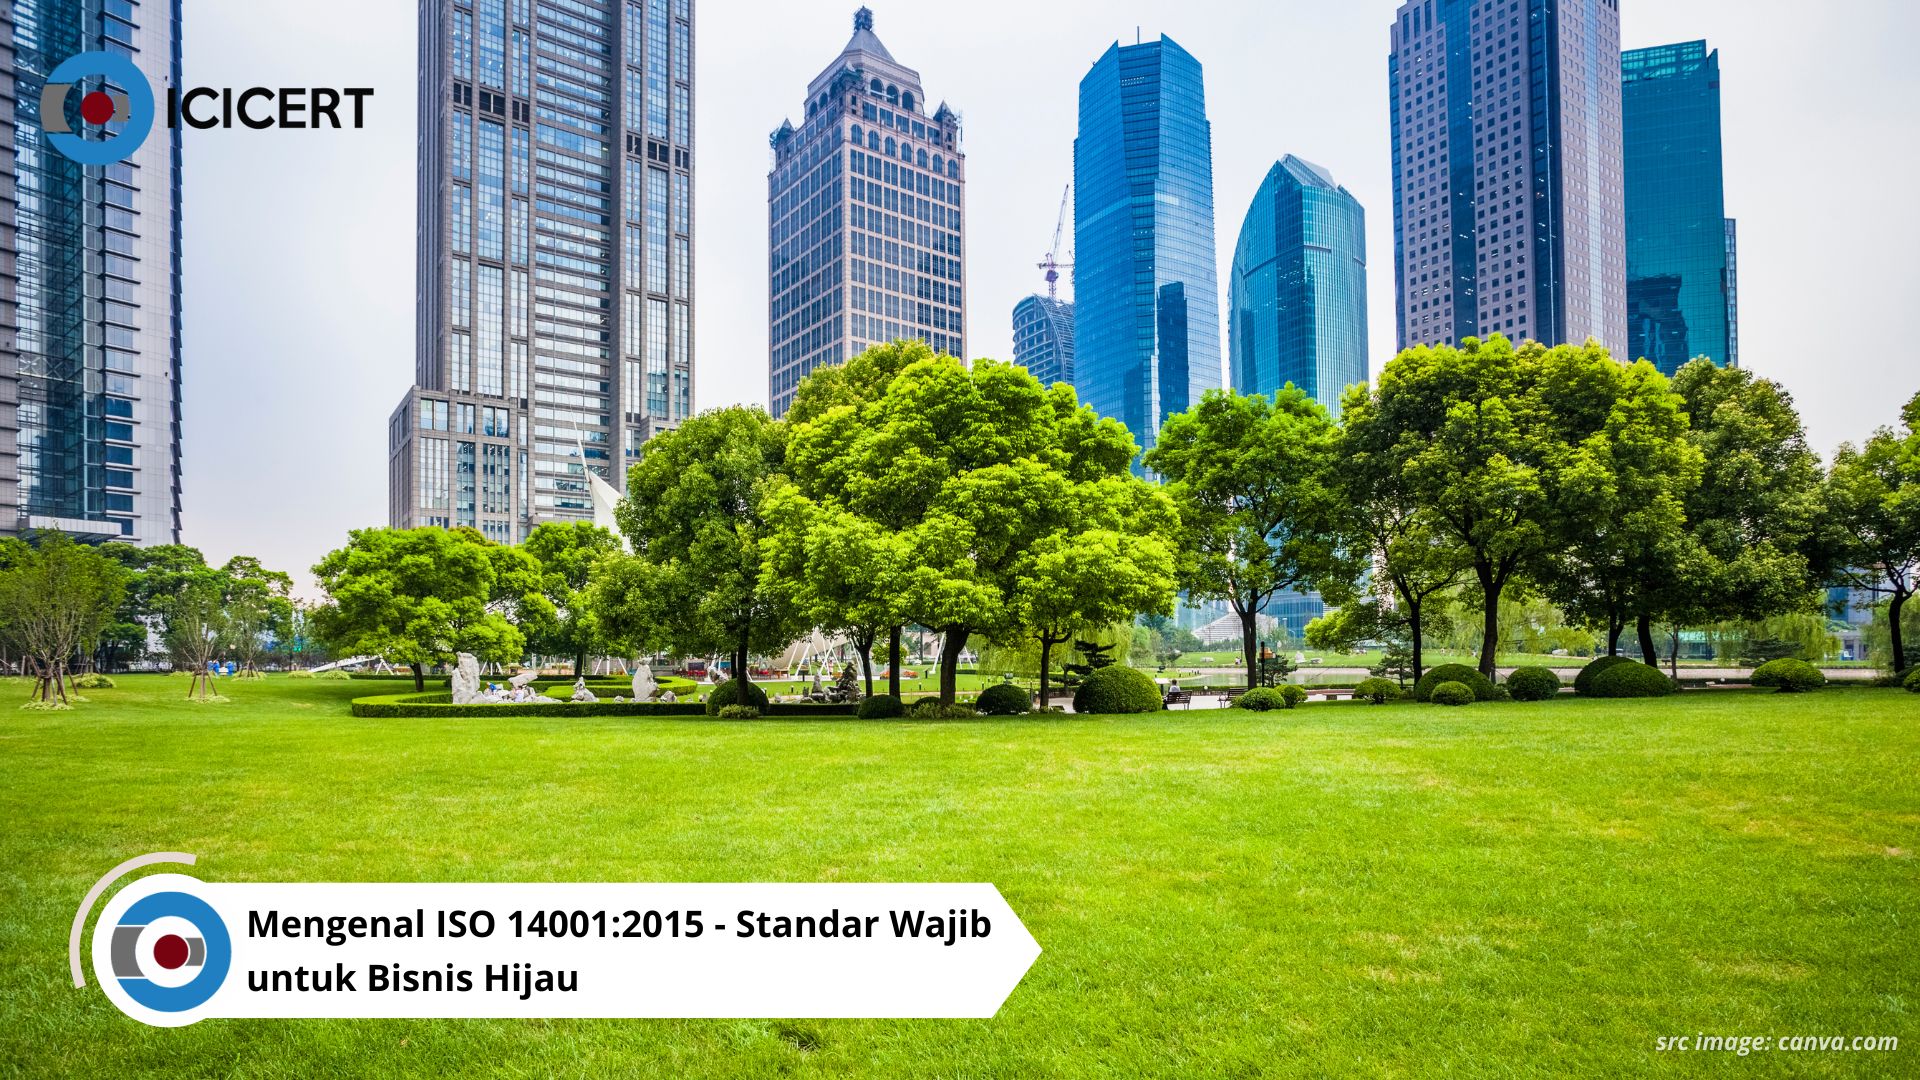 Panduan Lengkap: Mengenal ISO 14001:2015 - Standar Wajib untuk Bisnis Hijau